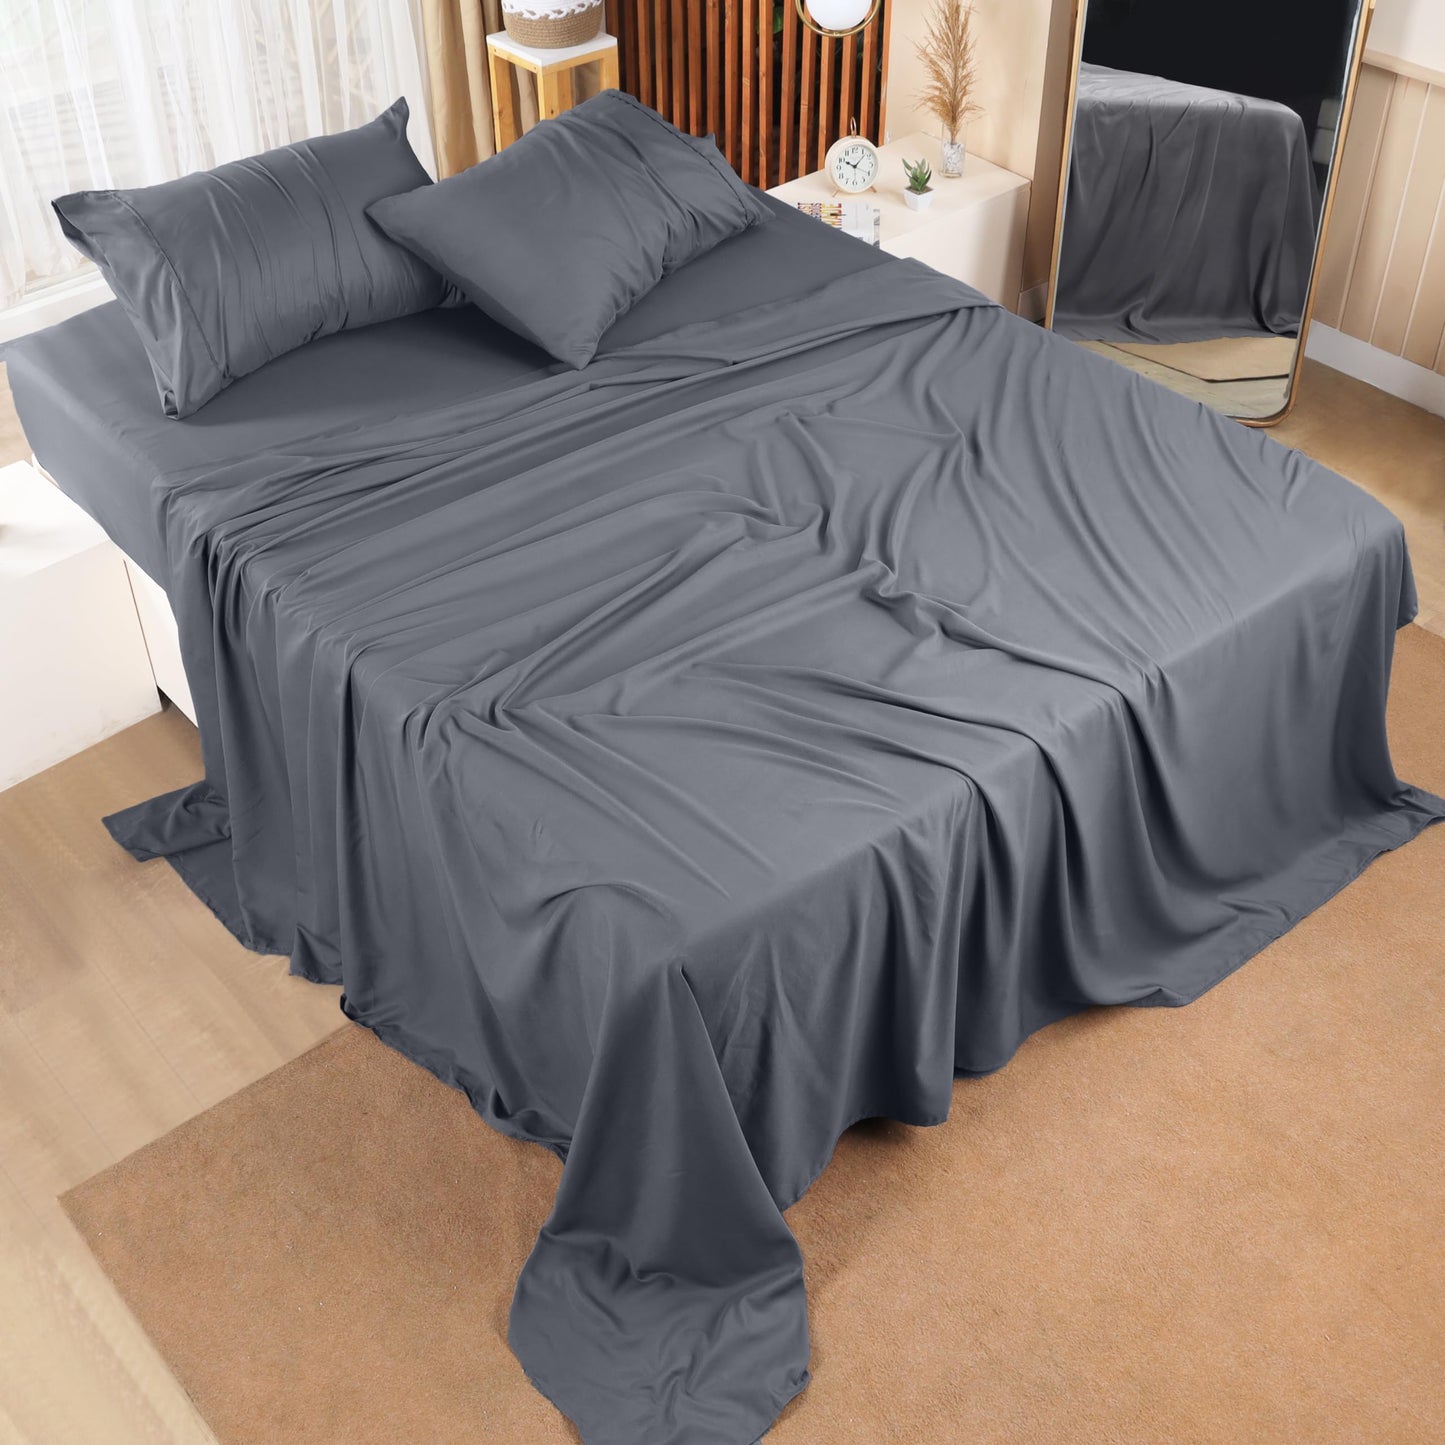 Utopia Bedding Queen Bed Sheets Set